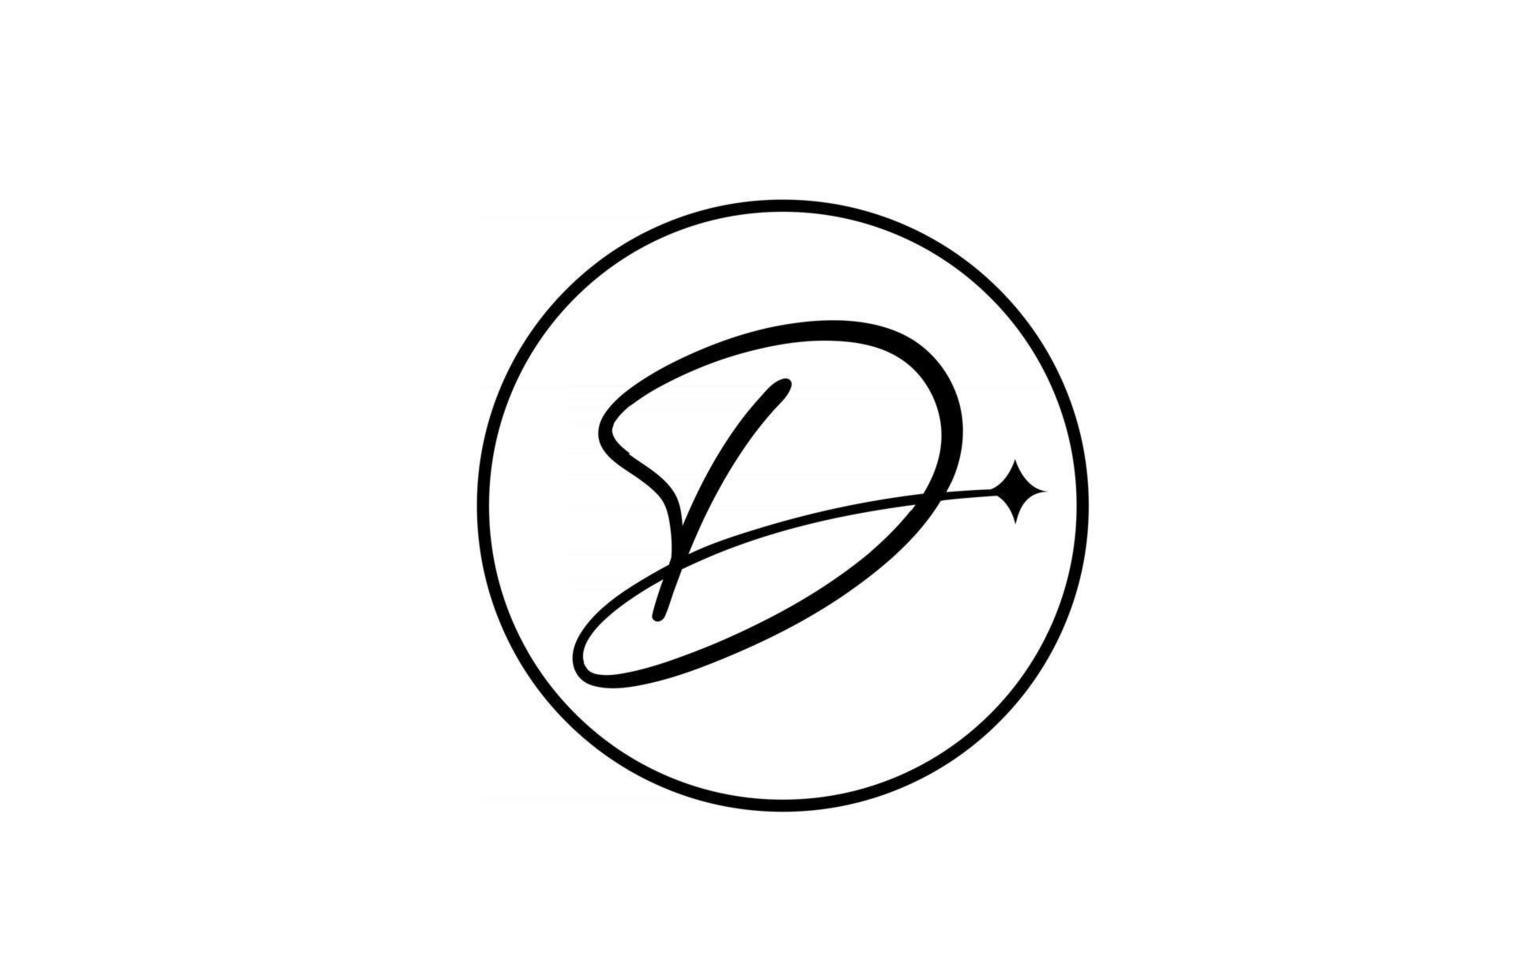 d logotipo da letra do alfabeto para negócios com estrela e círculo. letras simples e elegantes para a empresa. design de ícone de marca de identidade corporativa em branco e preto vetor